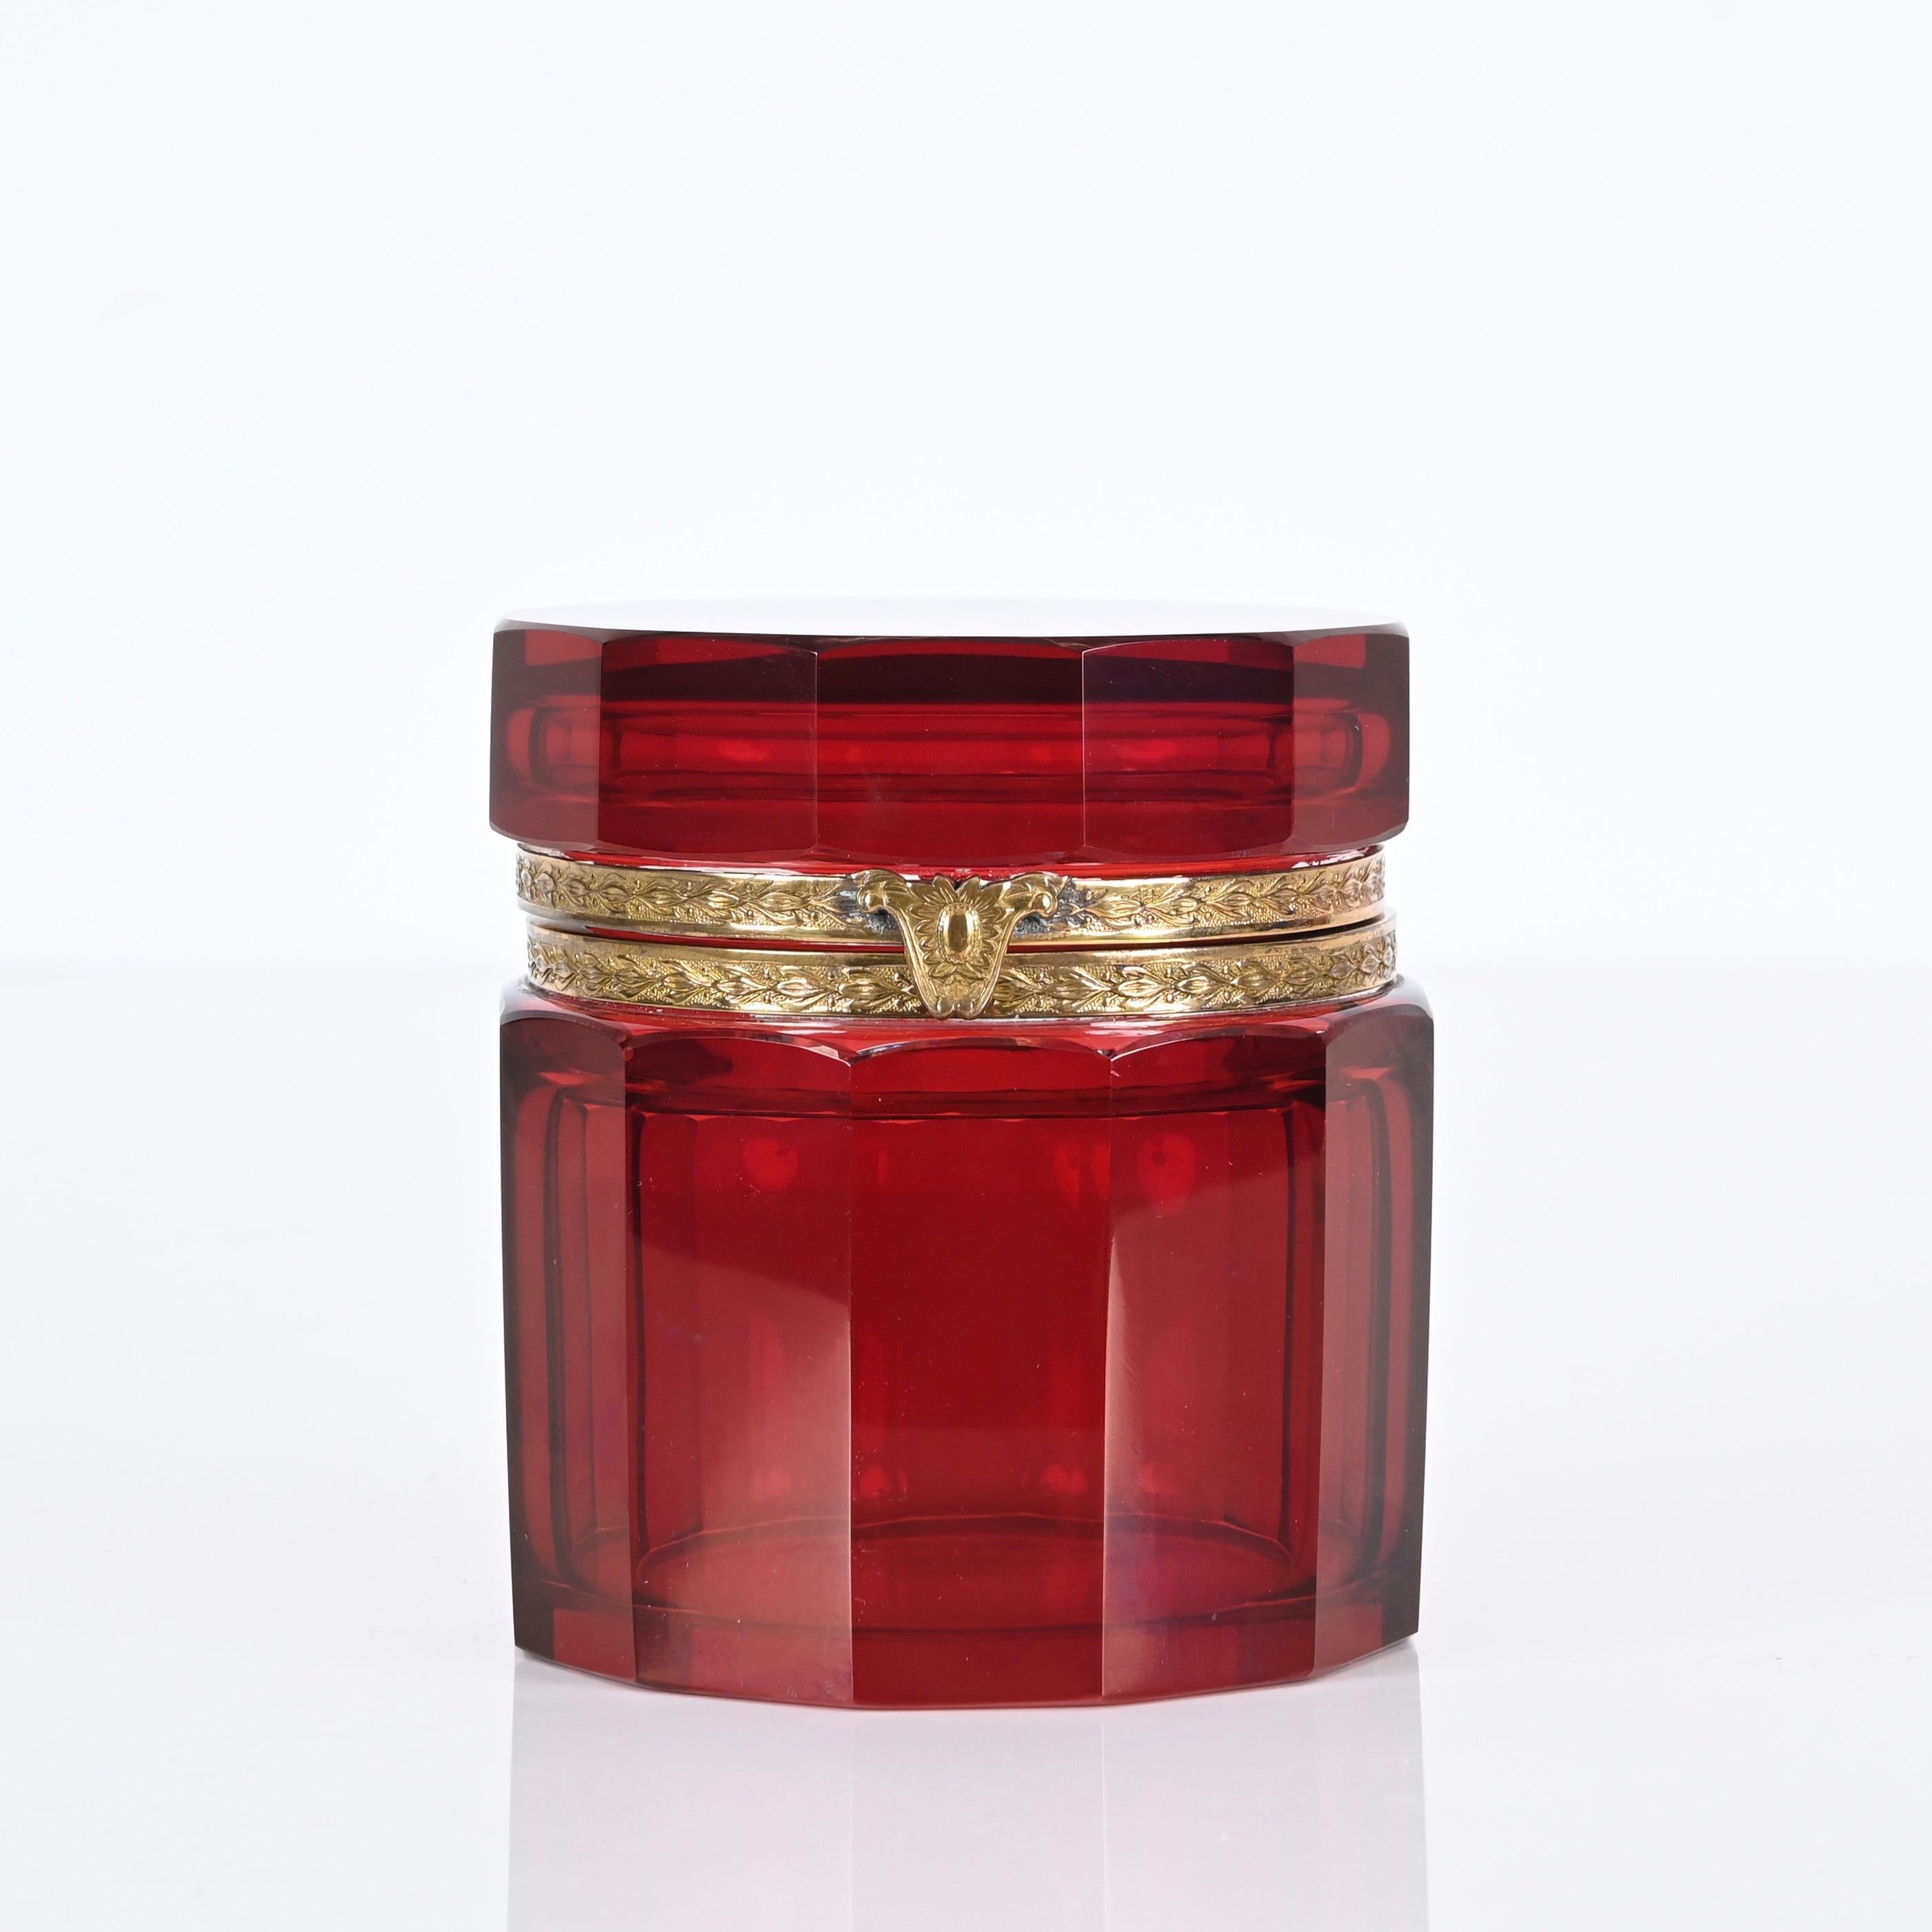 Superbe boîte à bijoux en verre de Murano rouge rubis facetté et argent doré. Cette pièce incroyablement rare a été produite en Italie dans les années 1920. 

La boîte est ornée d'un exquis verre rouge rubis à 12 facettes qui brille sous tous les